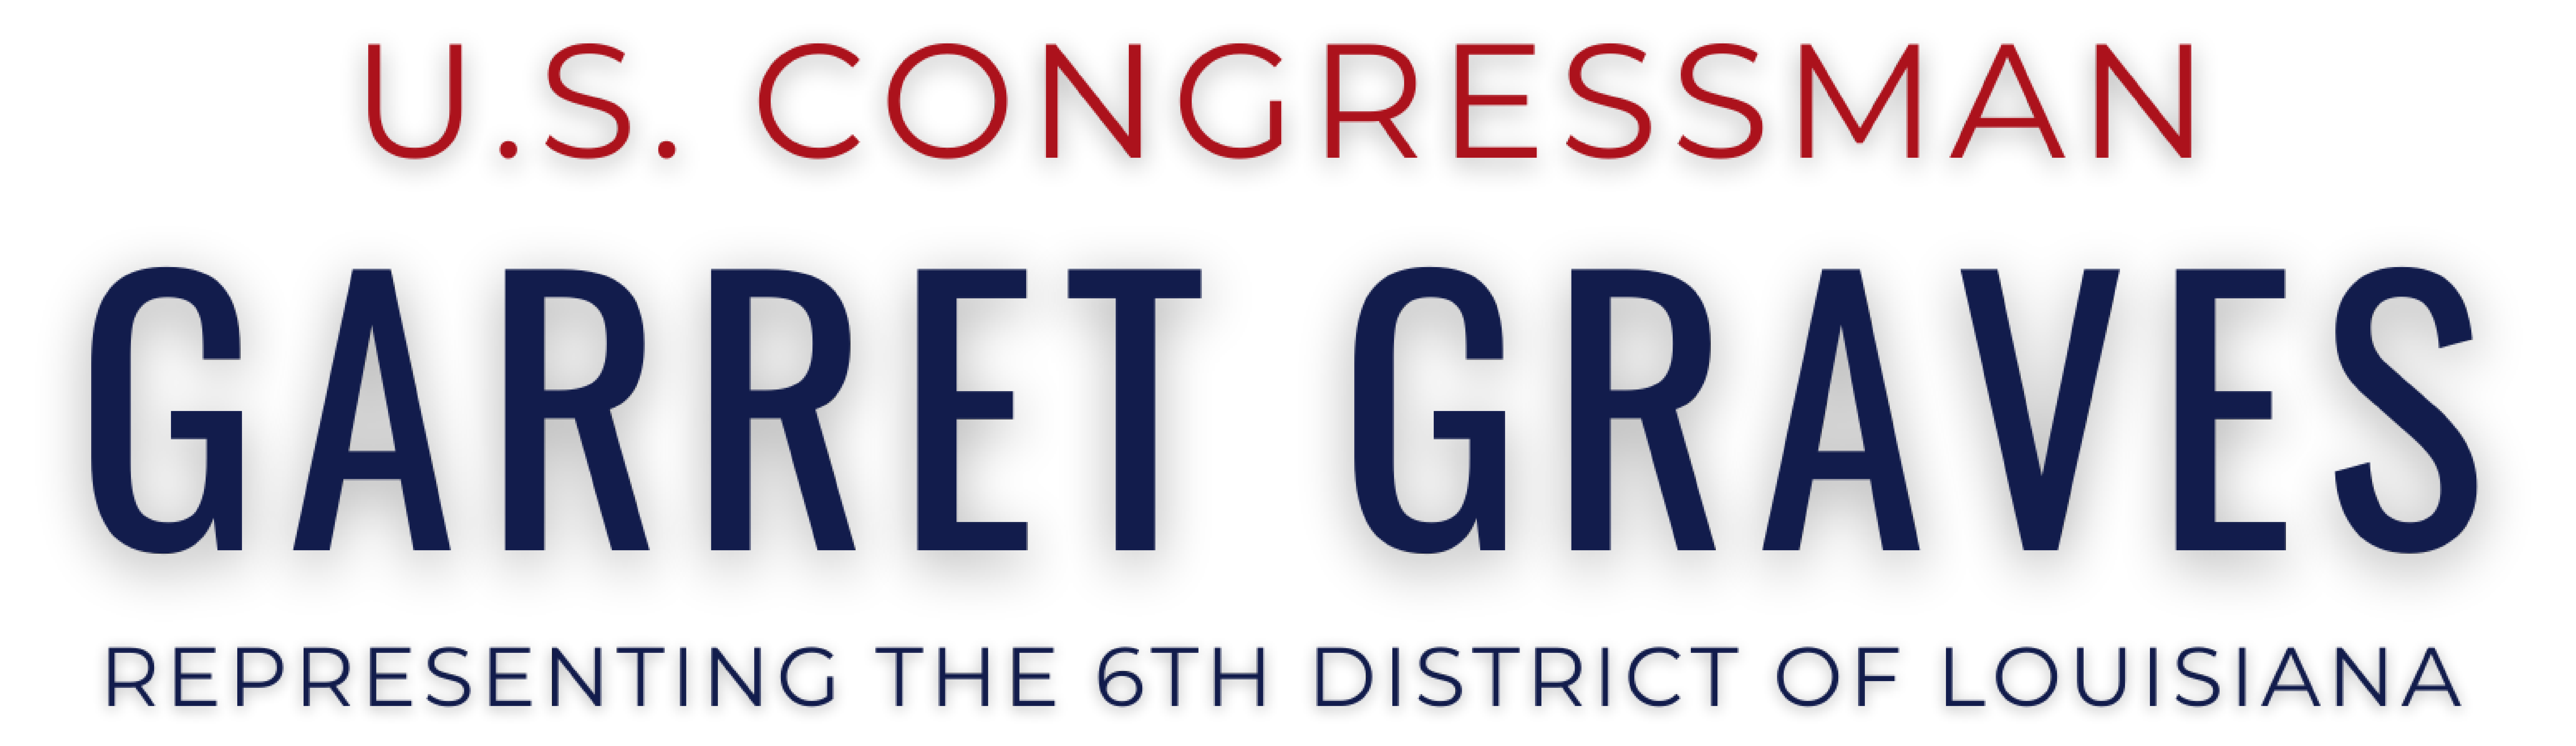 Congressman Garett Graves, Representing the 6th District of Louisiana